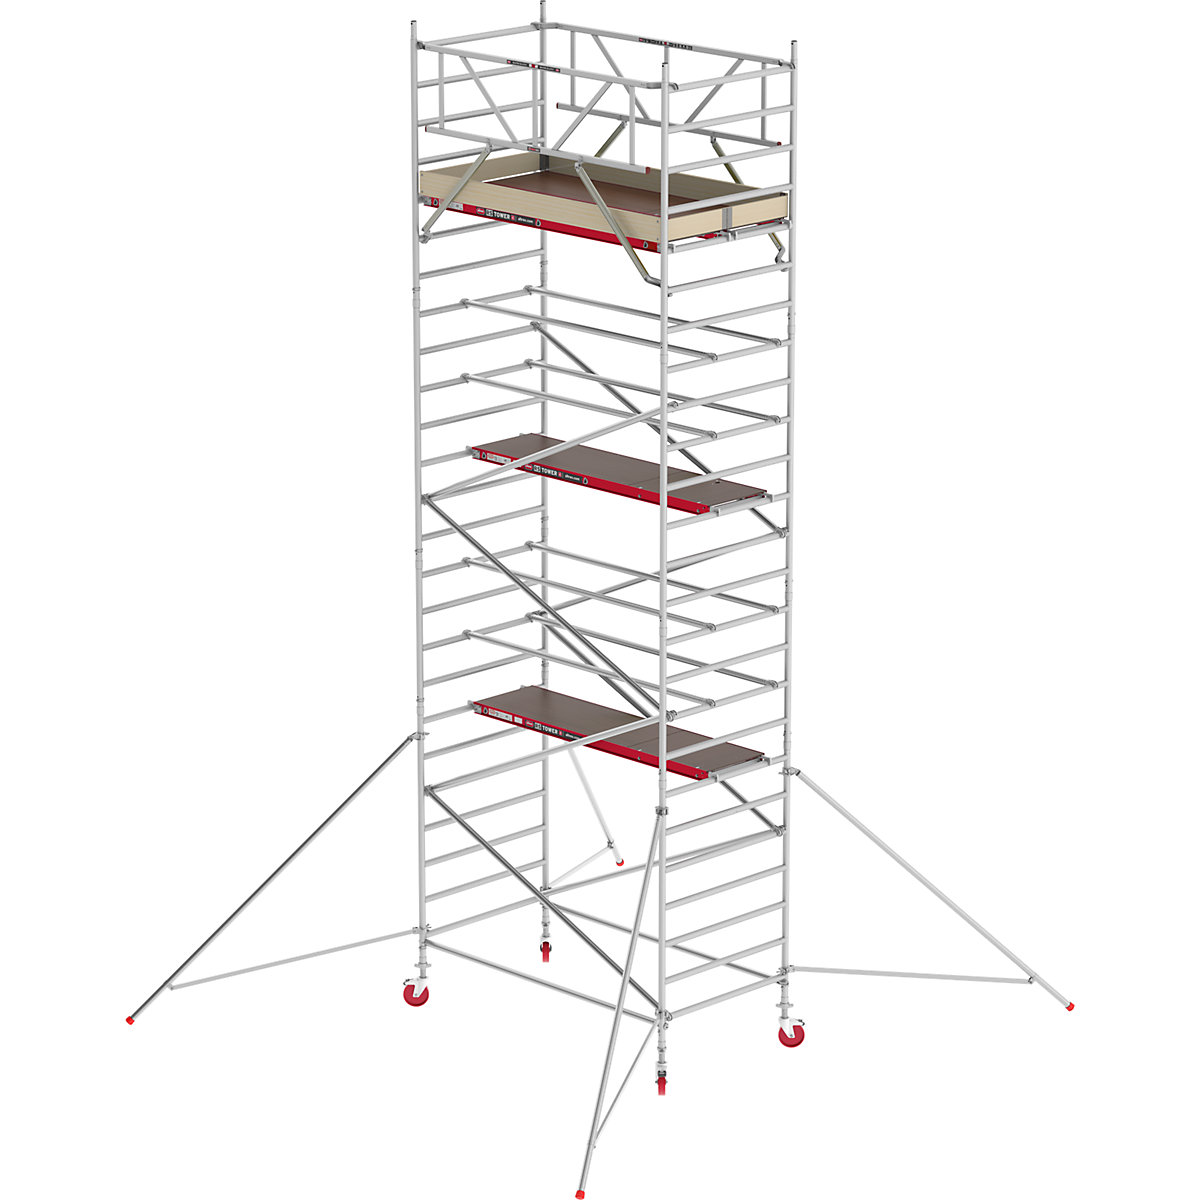 Fahrgerüst RS TOWER 42 breit Altrex, Holzplattform, Länge 1,85 m, Arbeitshöhe 8,20 m